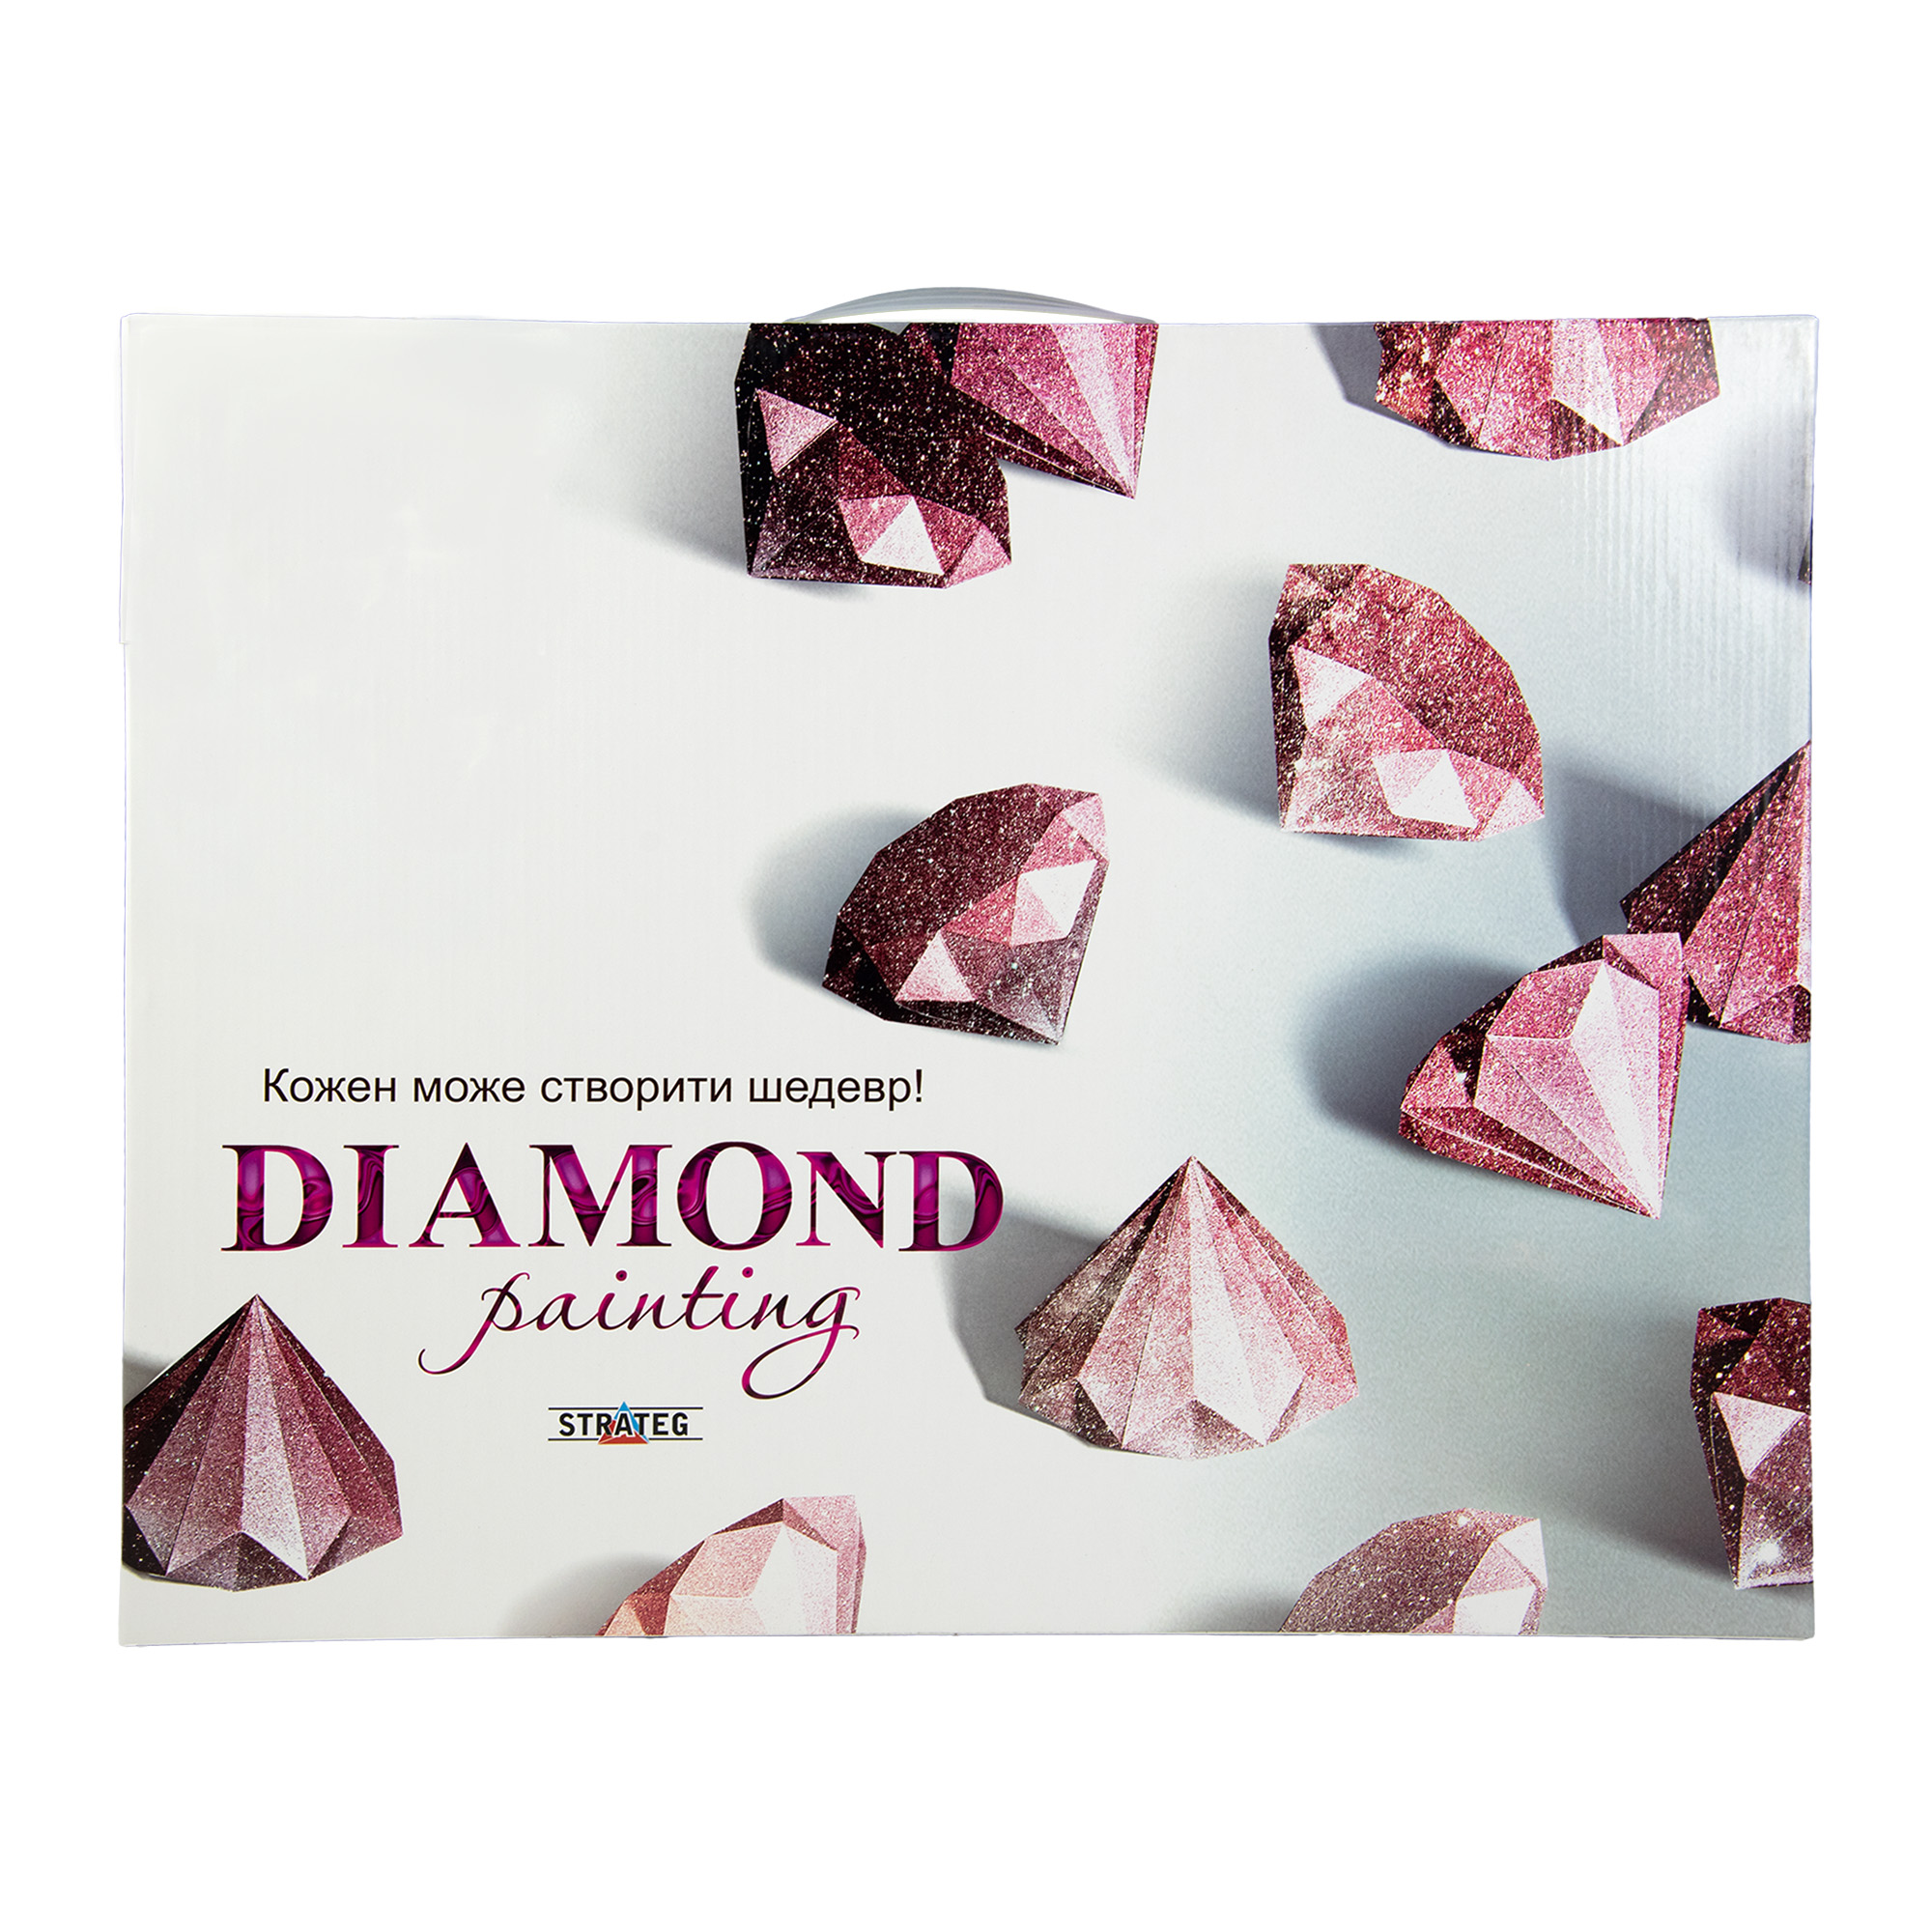 Diamantmosaik Strateg PREMIUM Reife Sonnenblumen Größe 40x50 cm (SK86000)